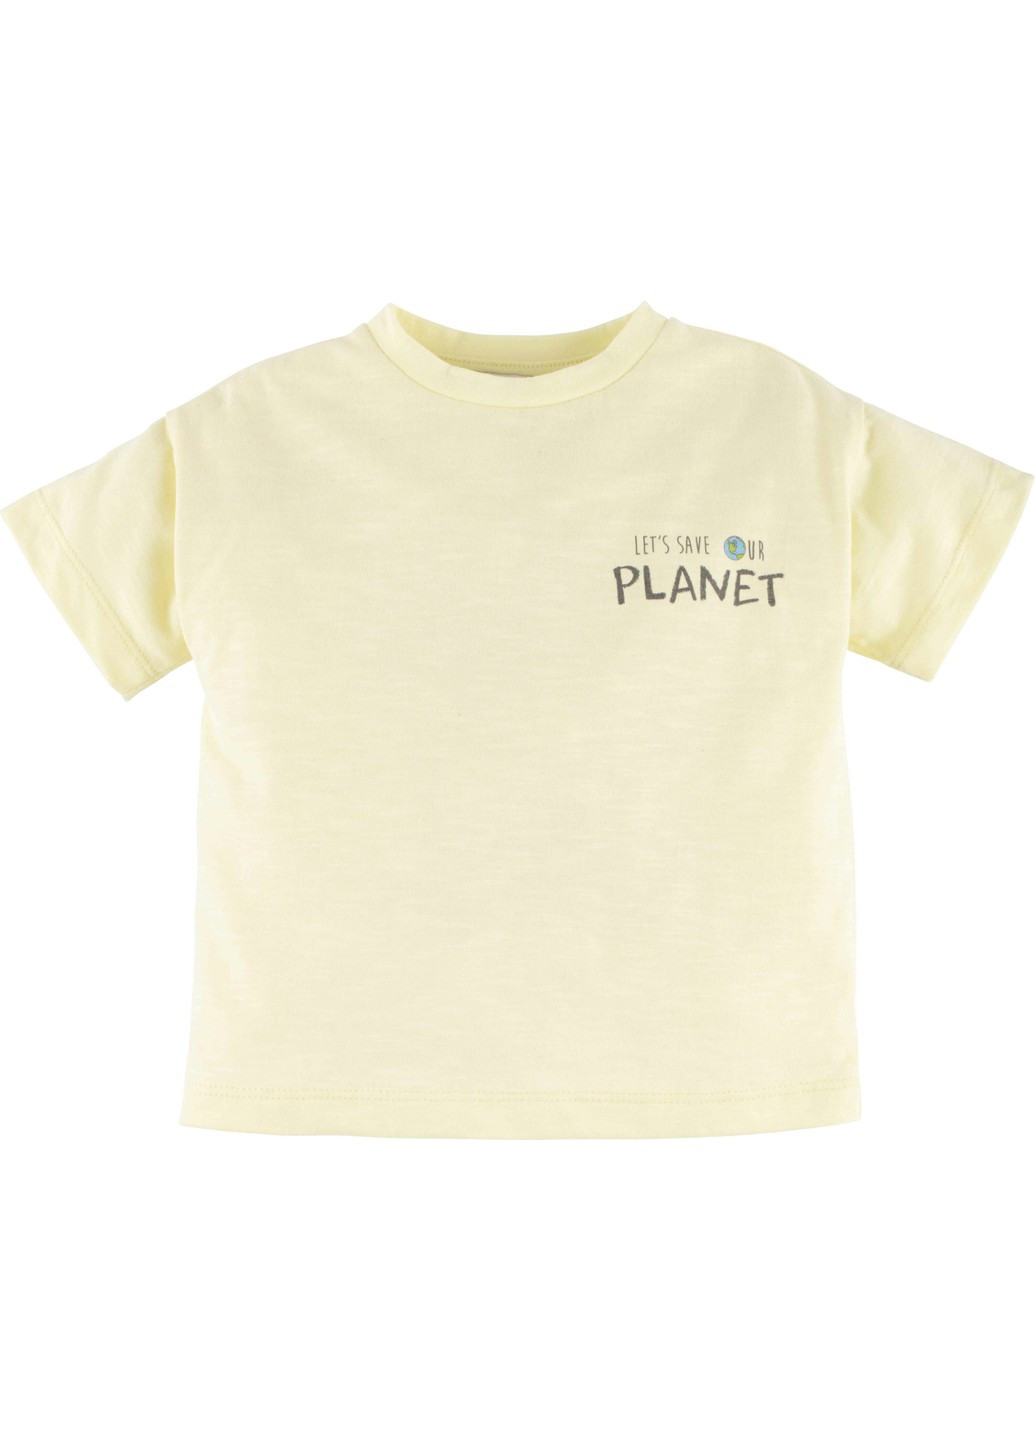 Зелений літній комплект футболка +шорти 15135 Idil Baby Mamino